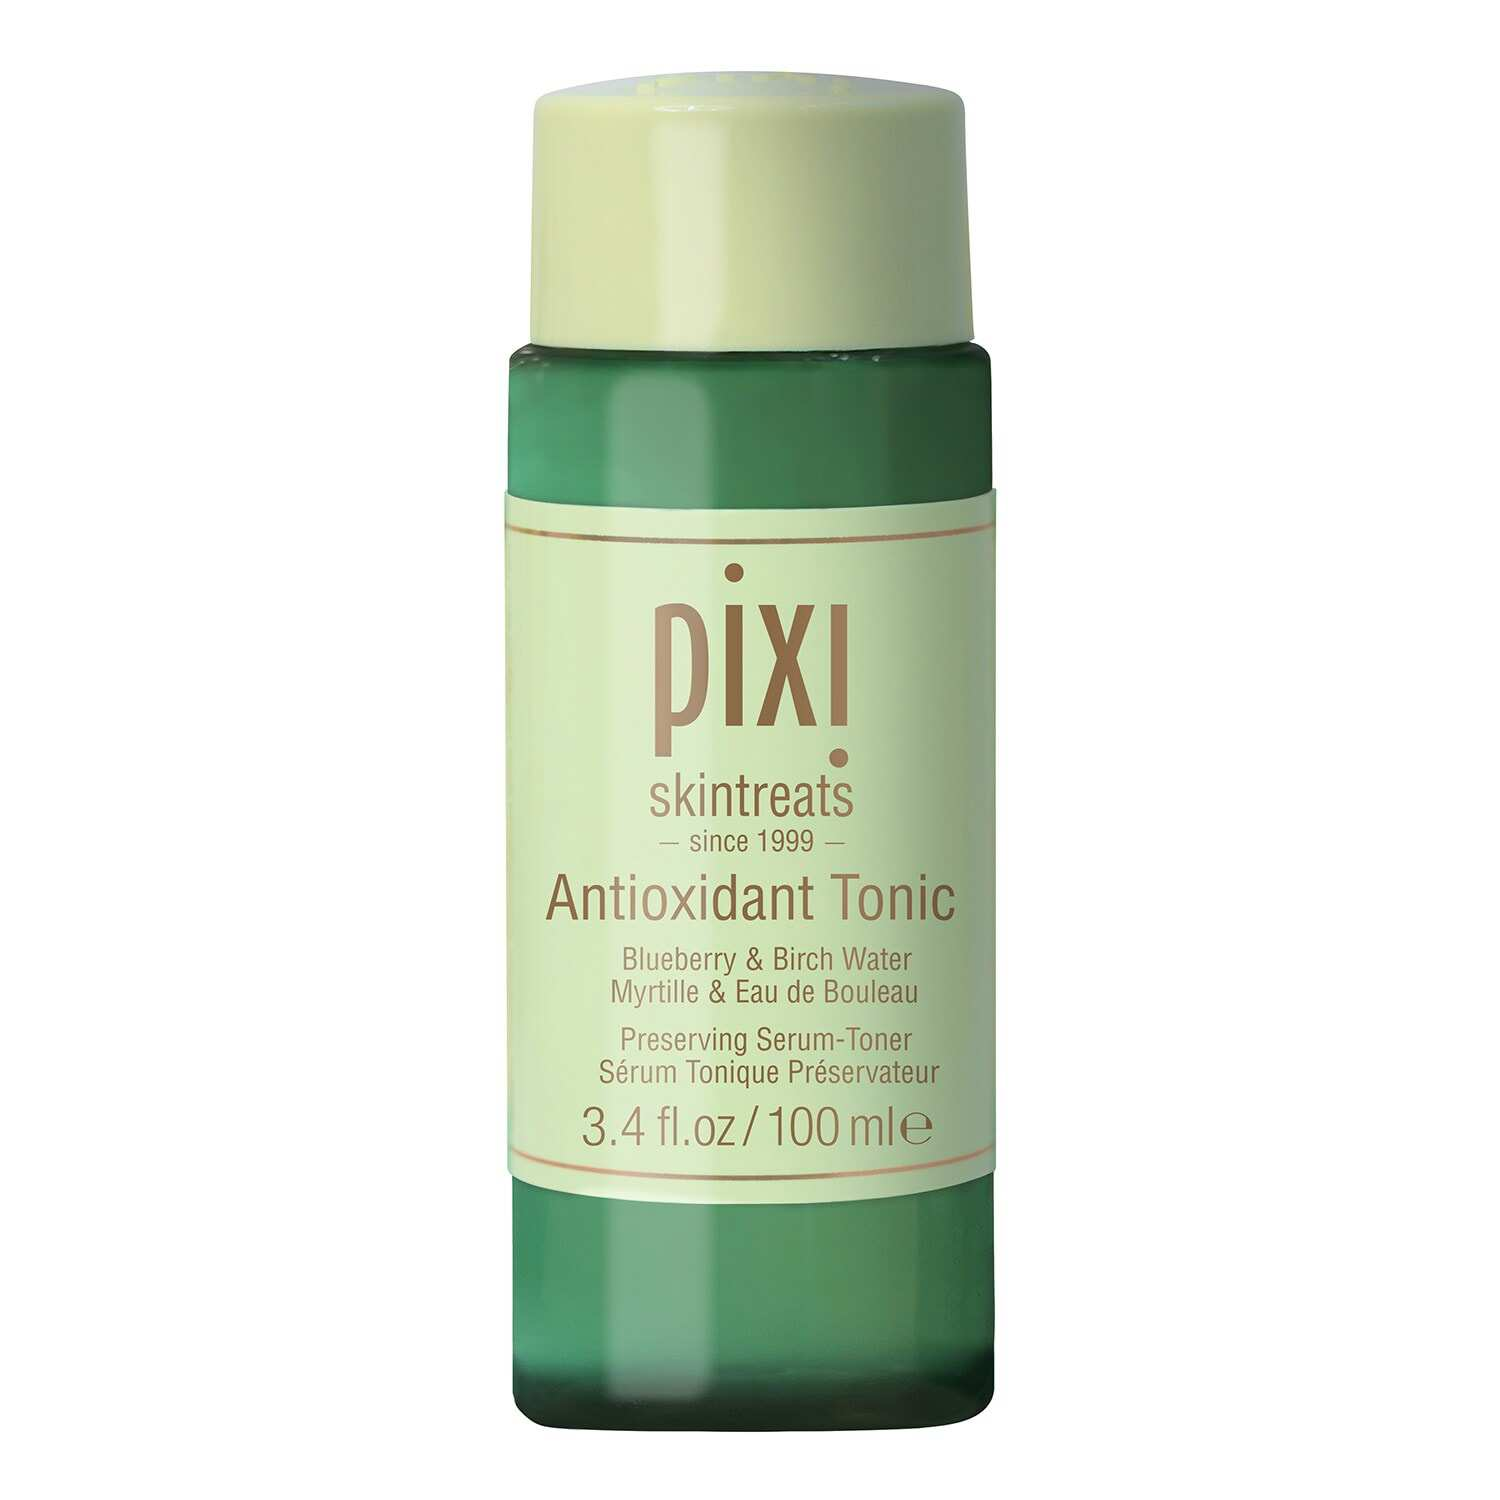 Antioxidant Tonic Se´rum To´nico Preservador de Pixi 12,99 euros